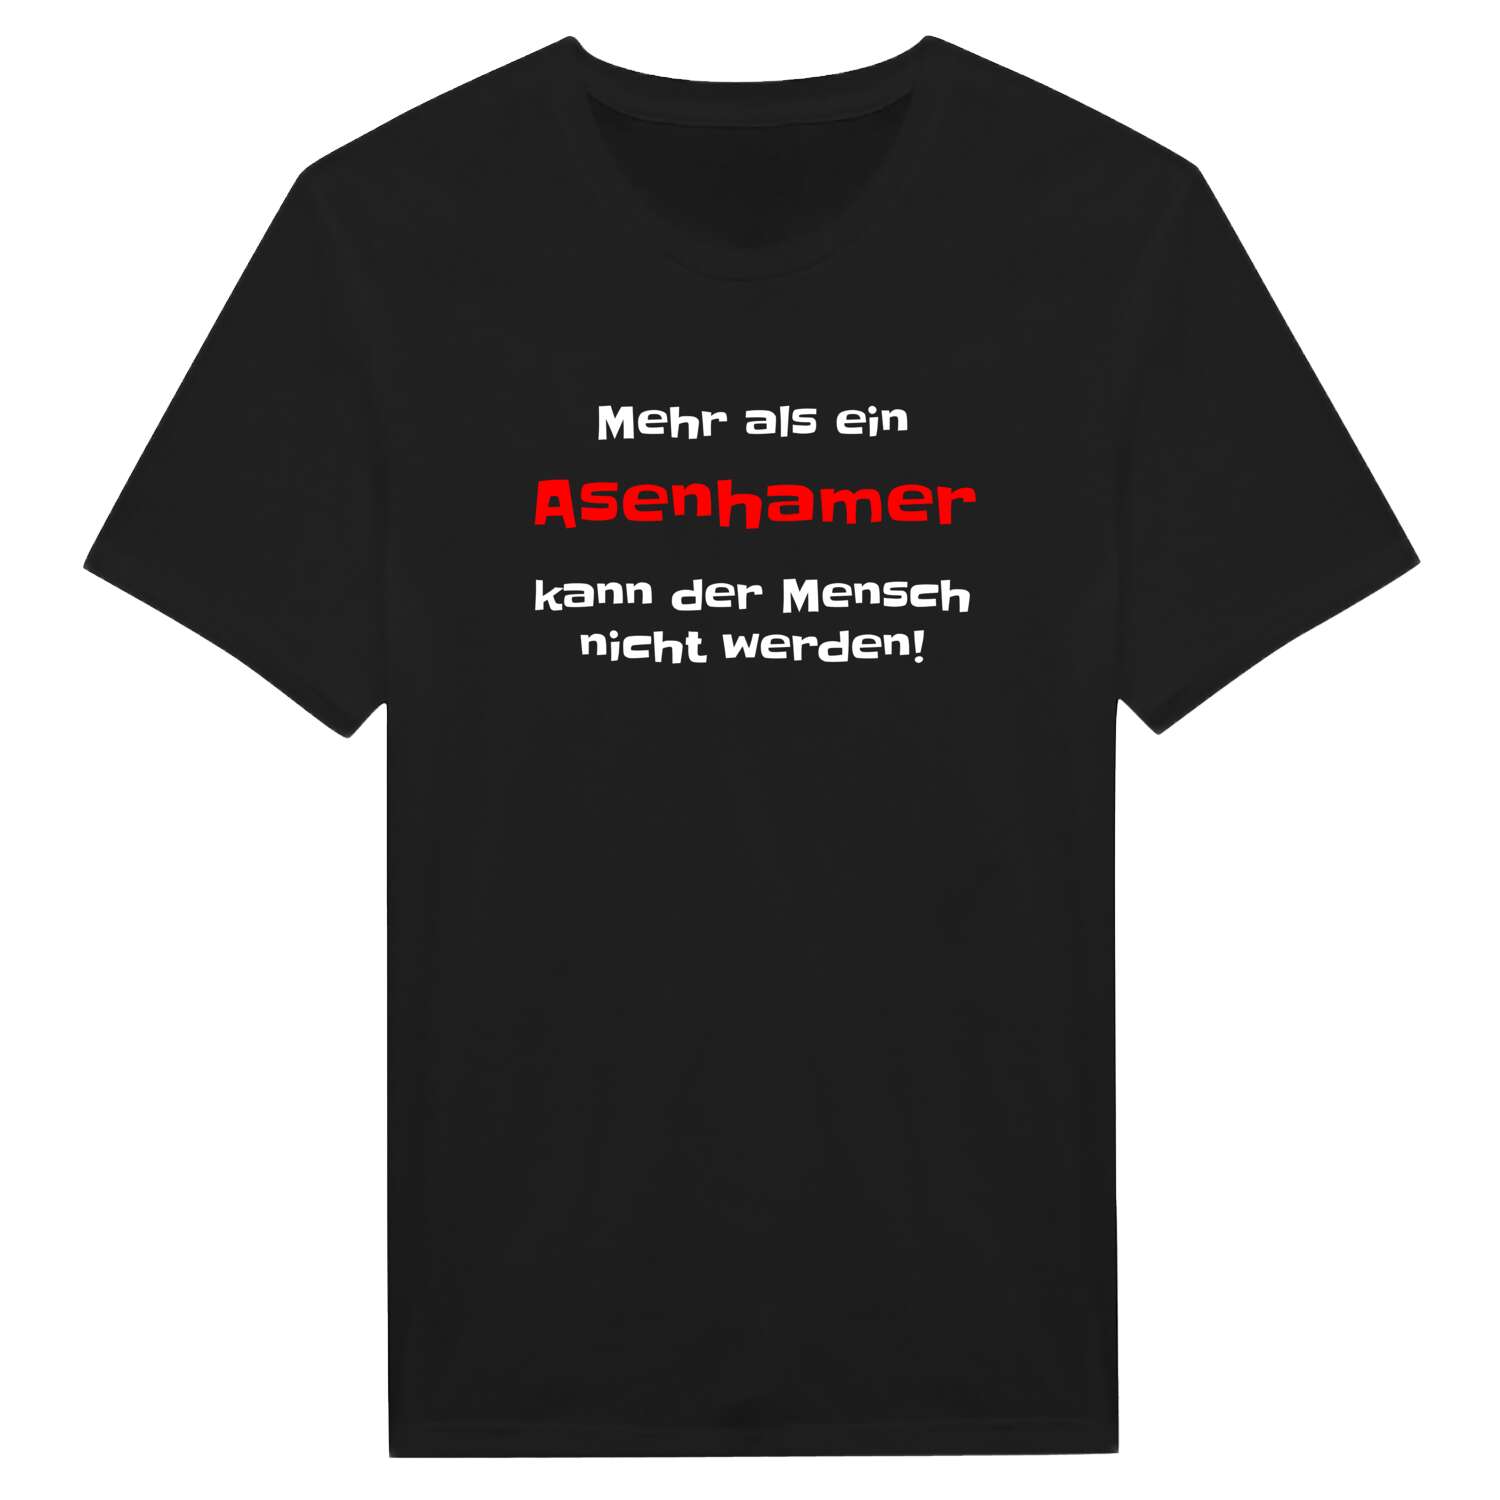 Asenham T-Shirt »Mehr als ein«